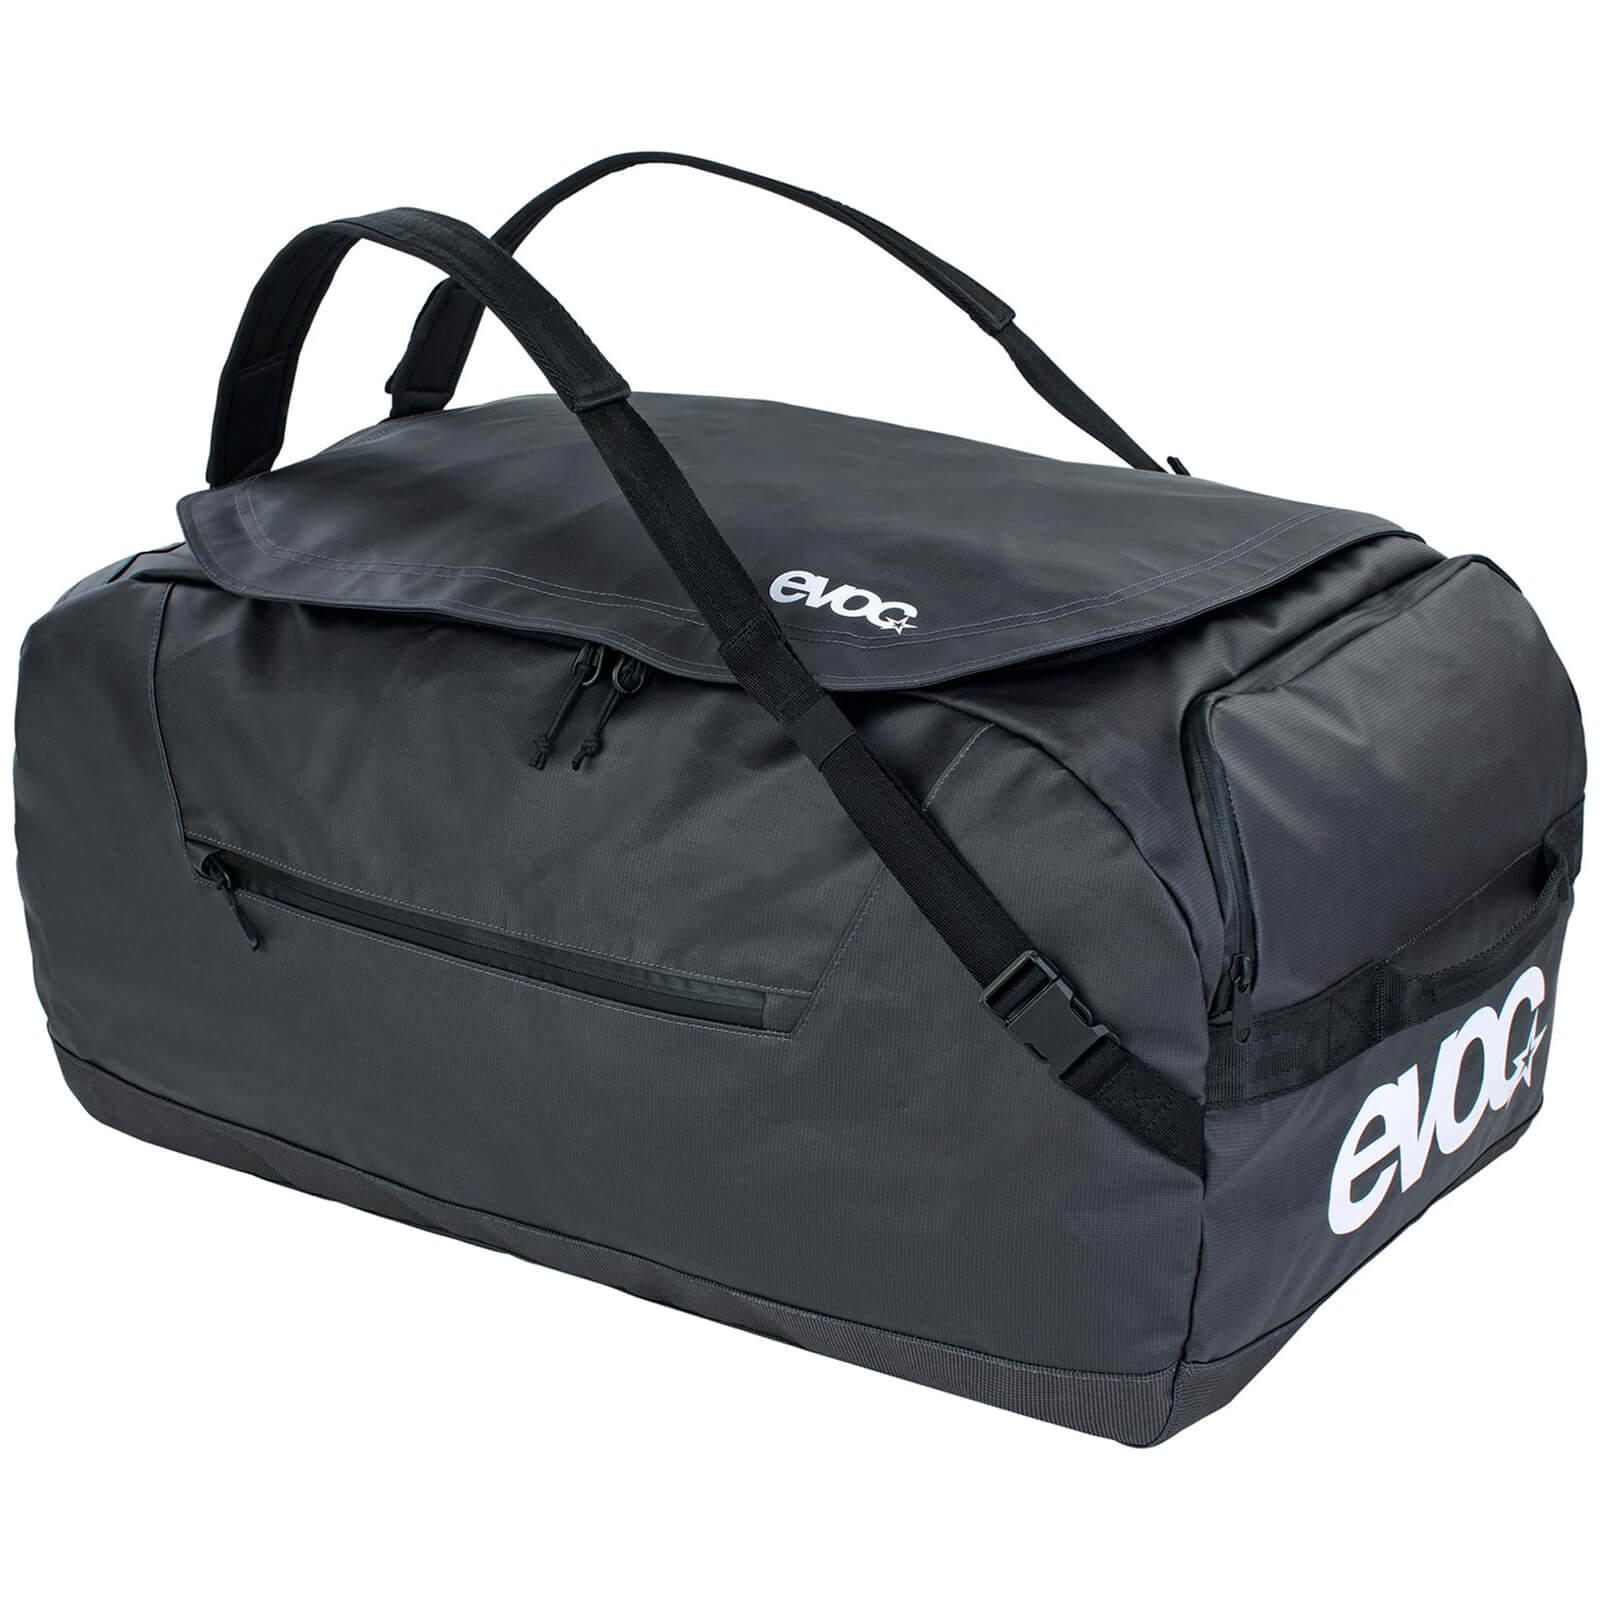 Evoc 40L Duffle Bag - Carbon Grey/Black